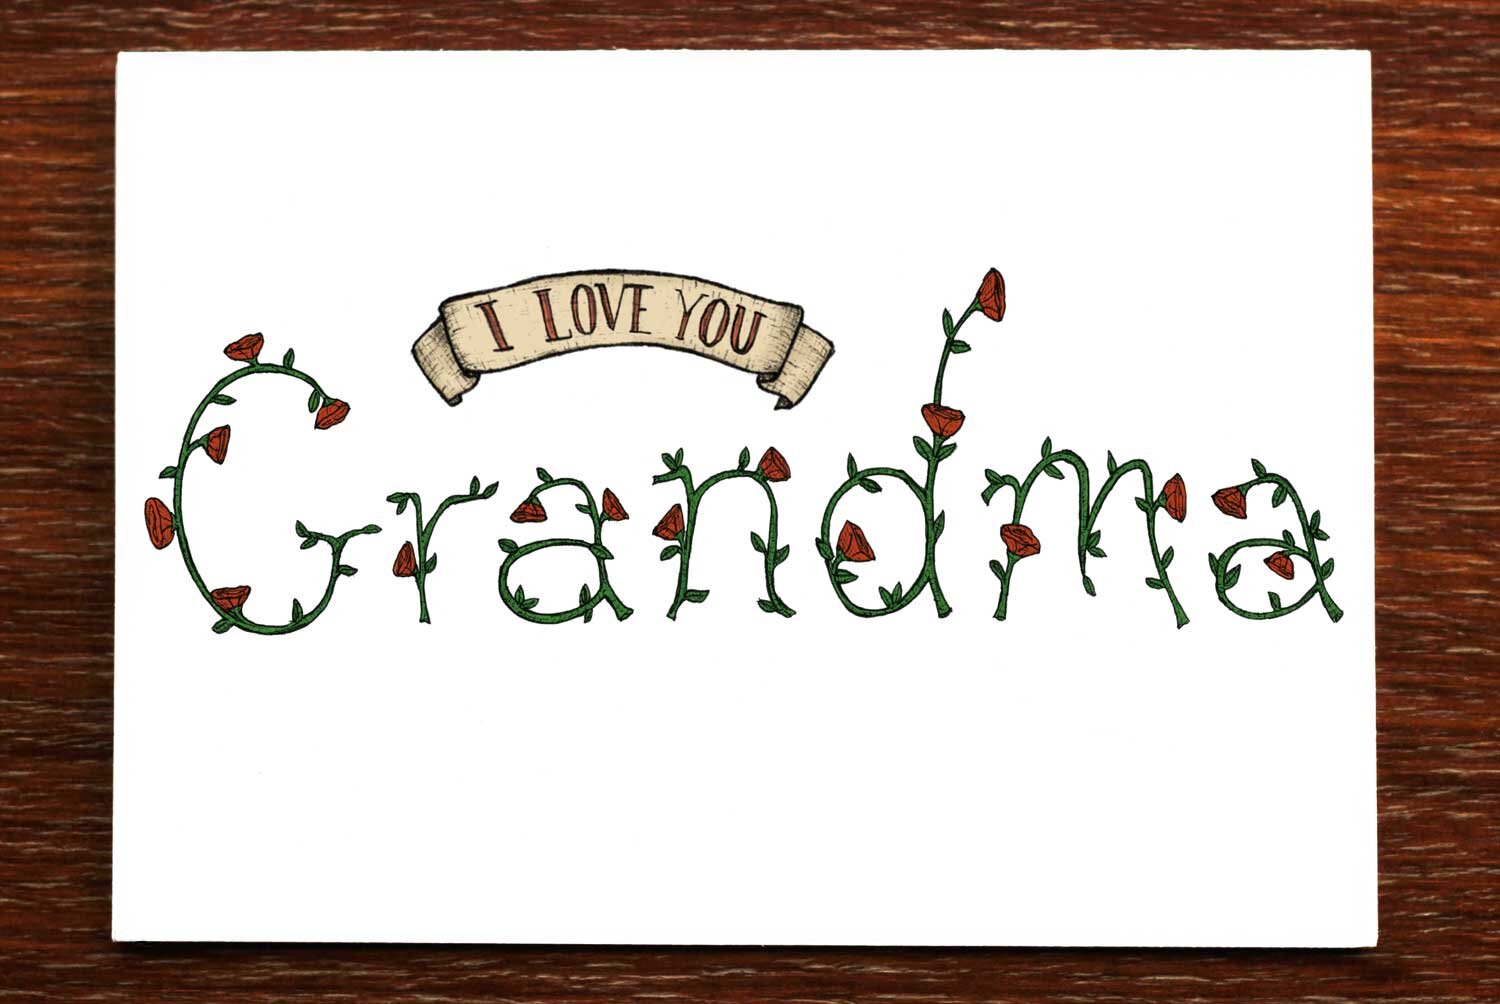 I Love You Grandma - Greeting Card